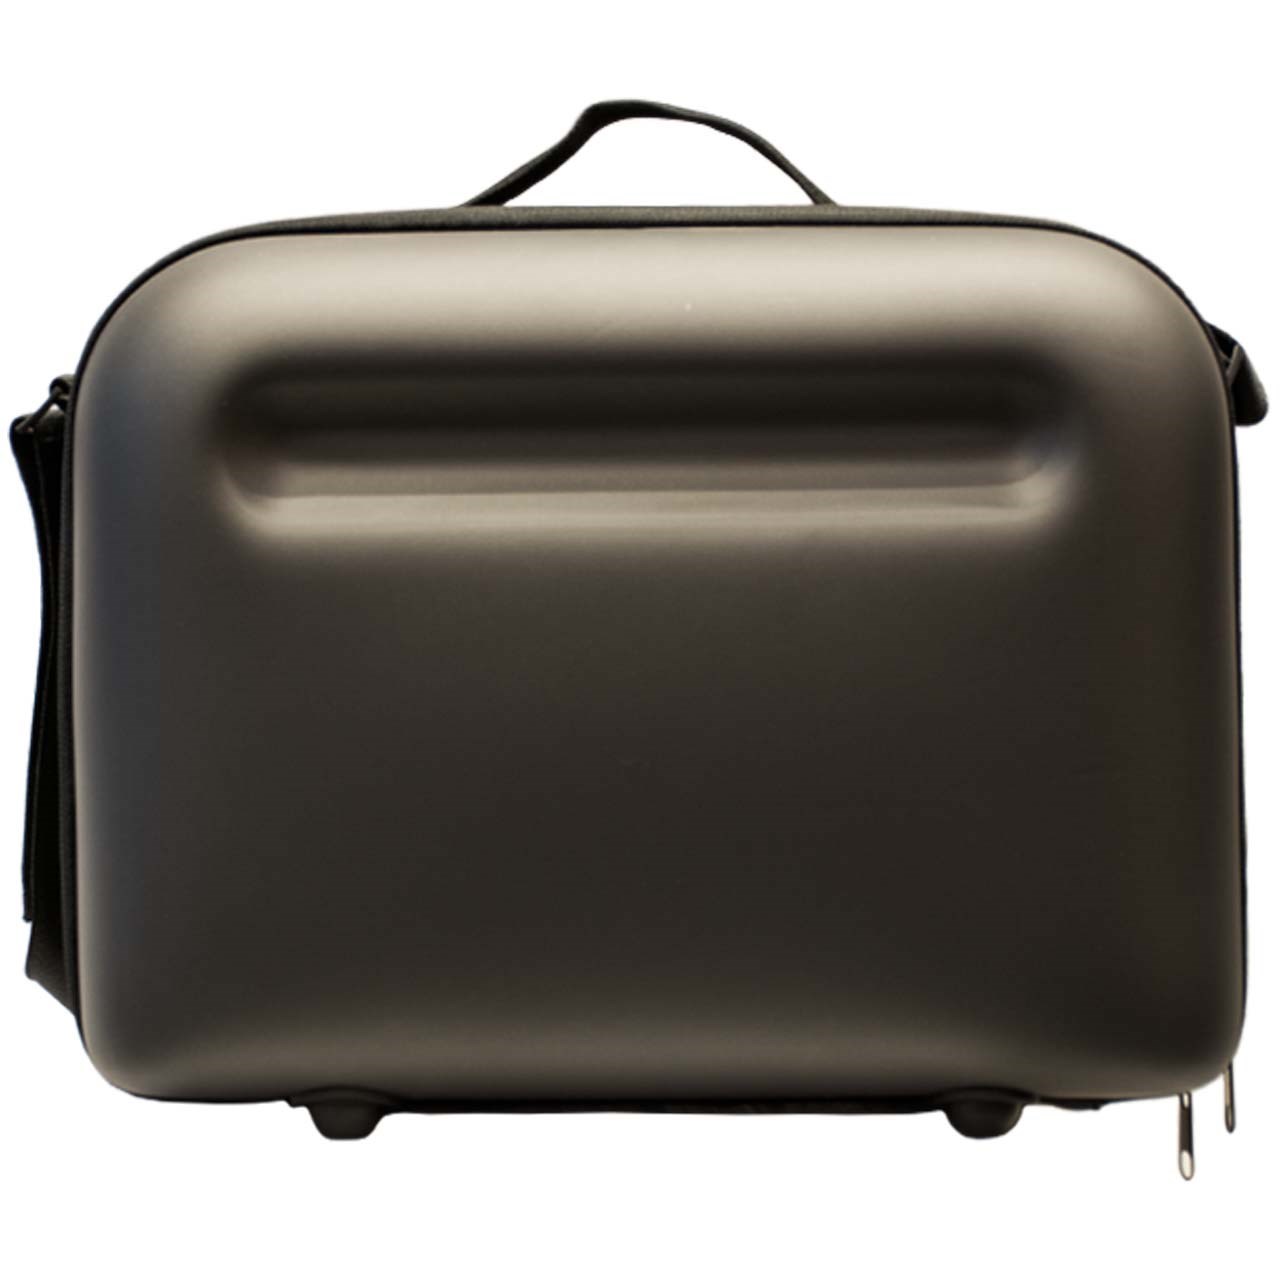 کیف حمل دستگاه نسپرسو مدل Nespresso Carrier